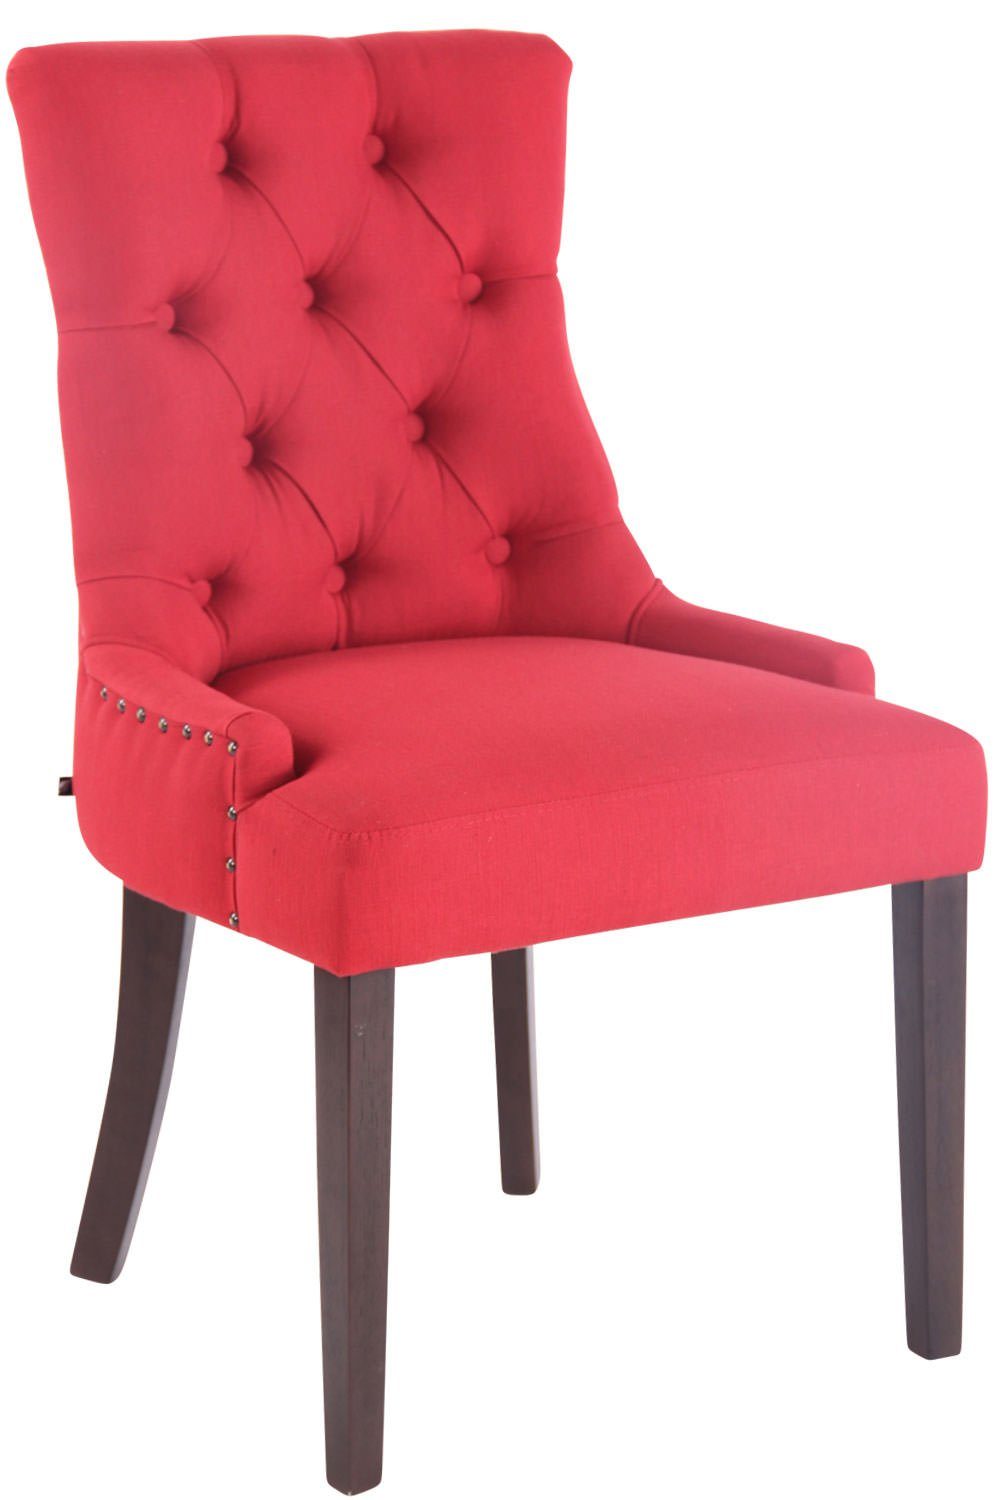 Gestell: rot TPFLiving Esszimmerstuhl Sitzfläche: hochwertig mit Aboli Wohnzimmerstuhl), antik-dunkel Konferenzstuhl - - - Stoff Kautschukholz (Küchenstuhl Sitzfläche gepolsterter